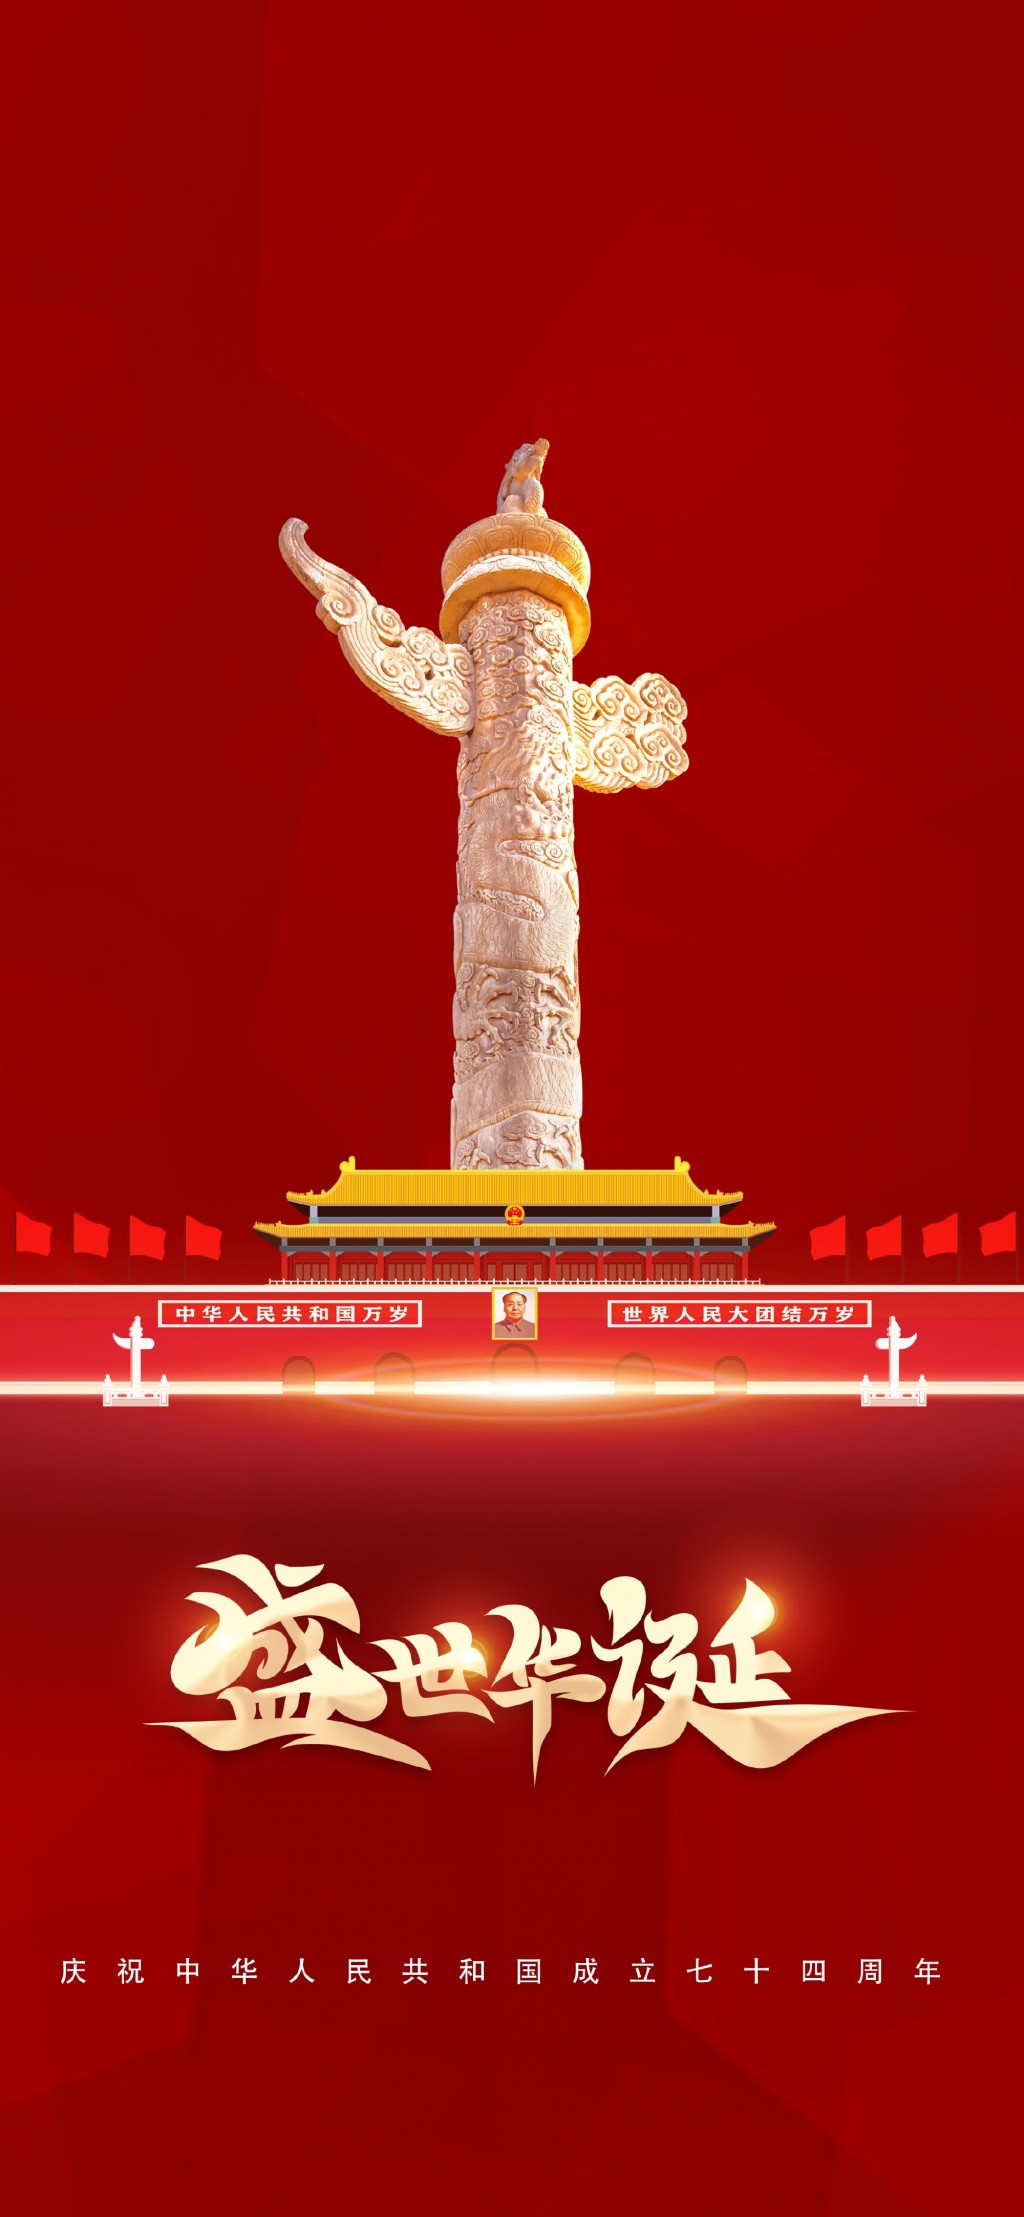 国庆节祝福文字插画手机壁纸